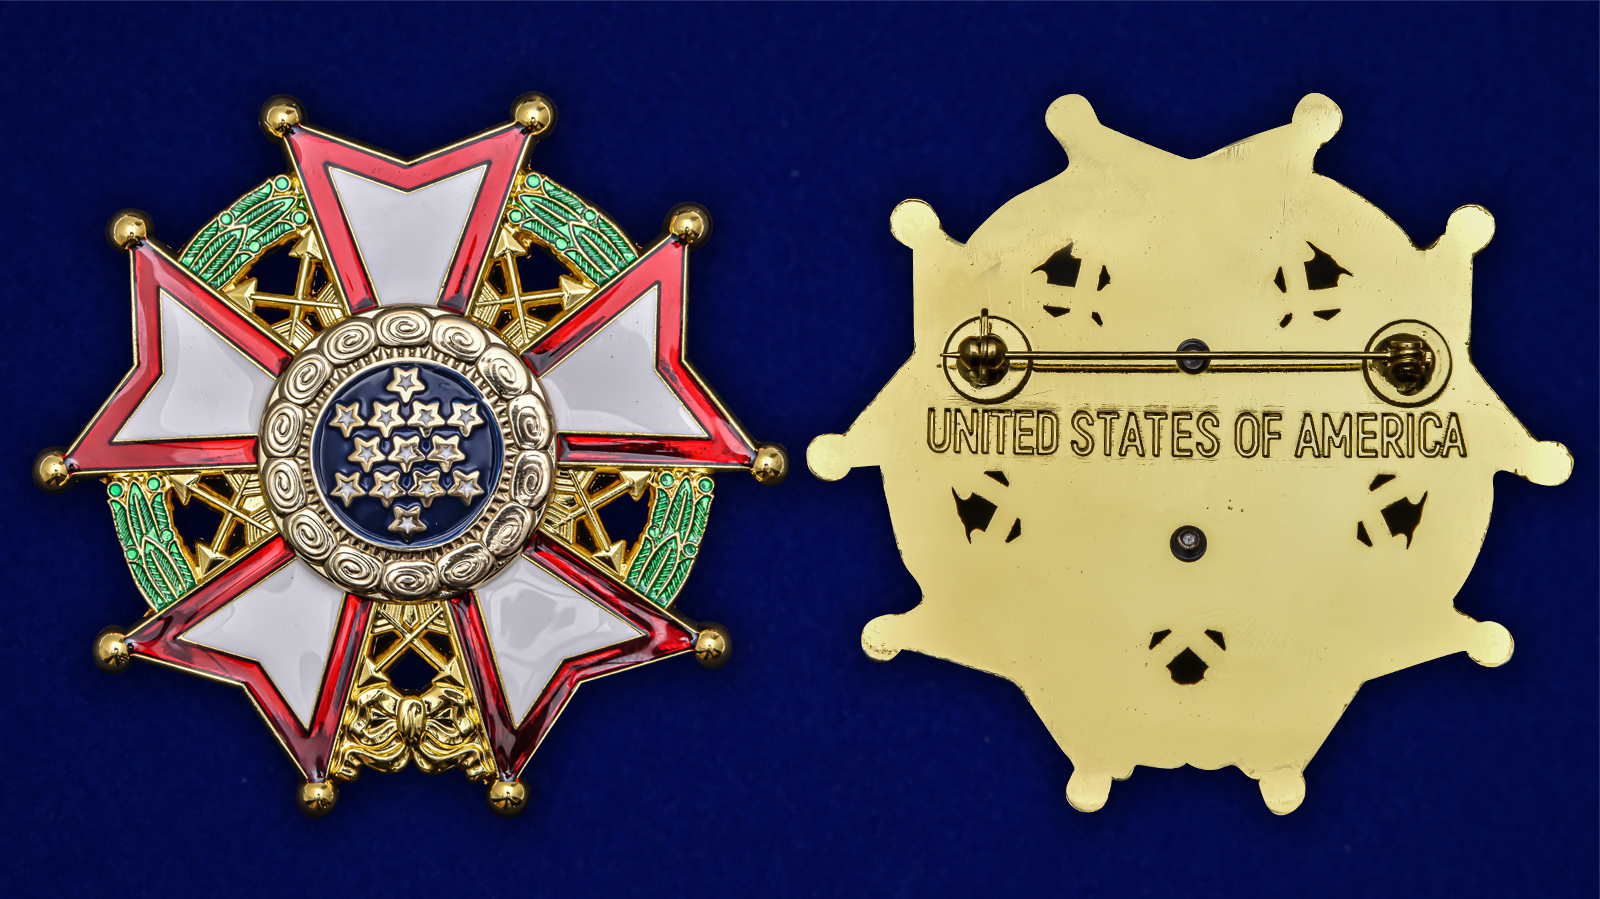 Орден "Легион почета" США 1-й степени (шеф-командор) - описание